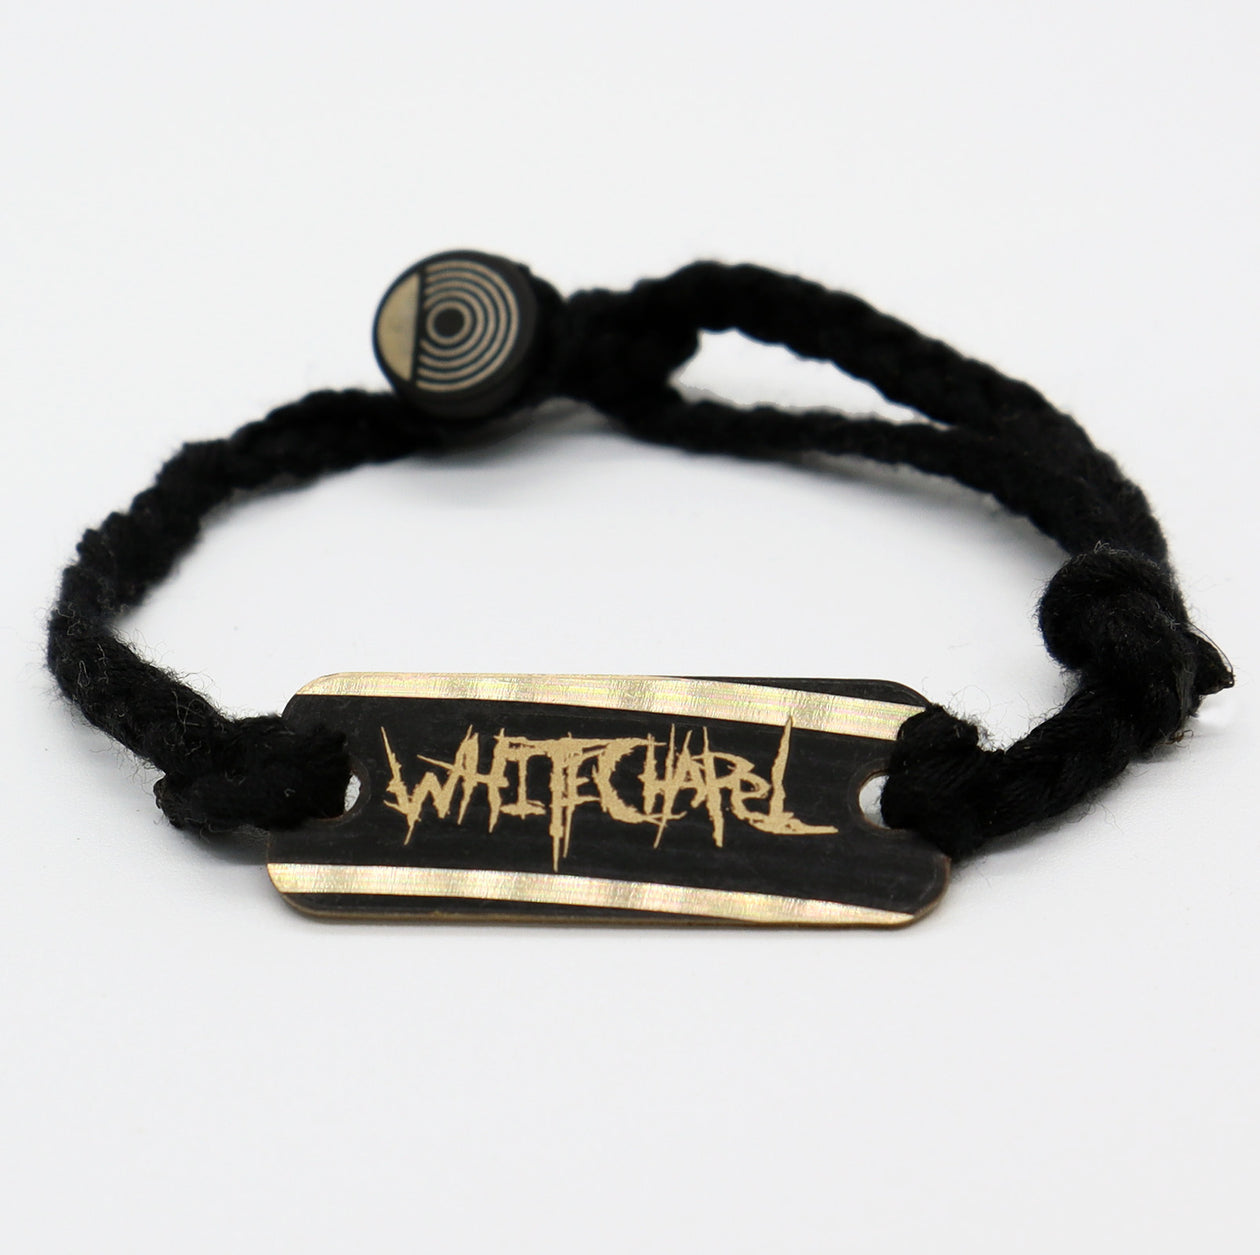 Whitechapel - Reclaimed Cymbal Bracelet